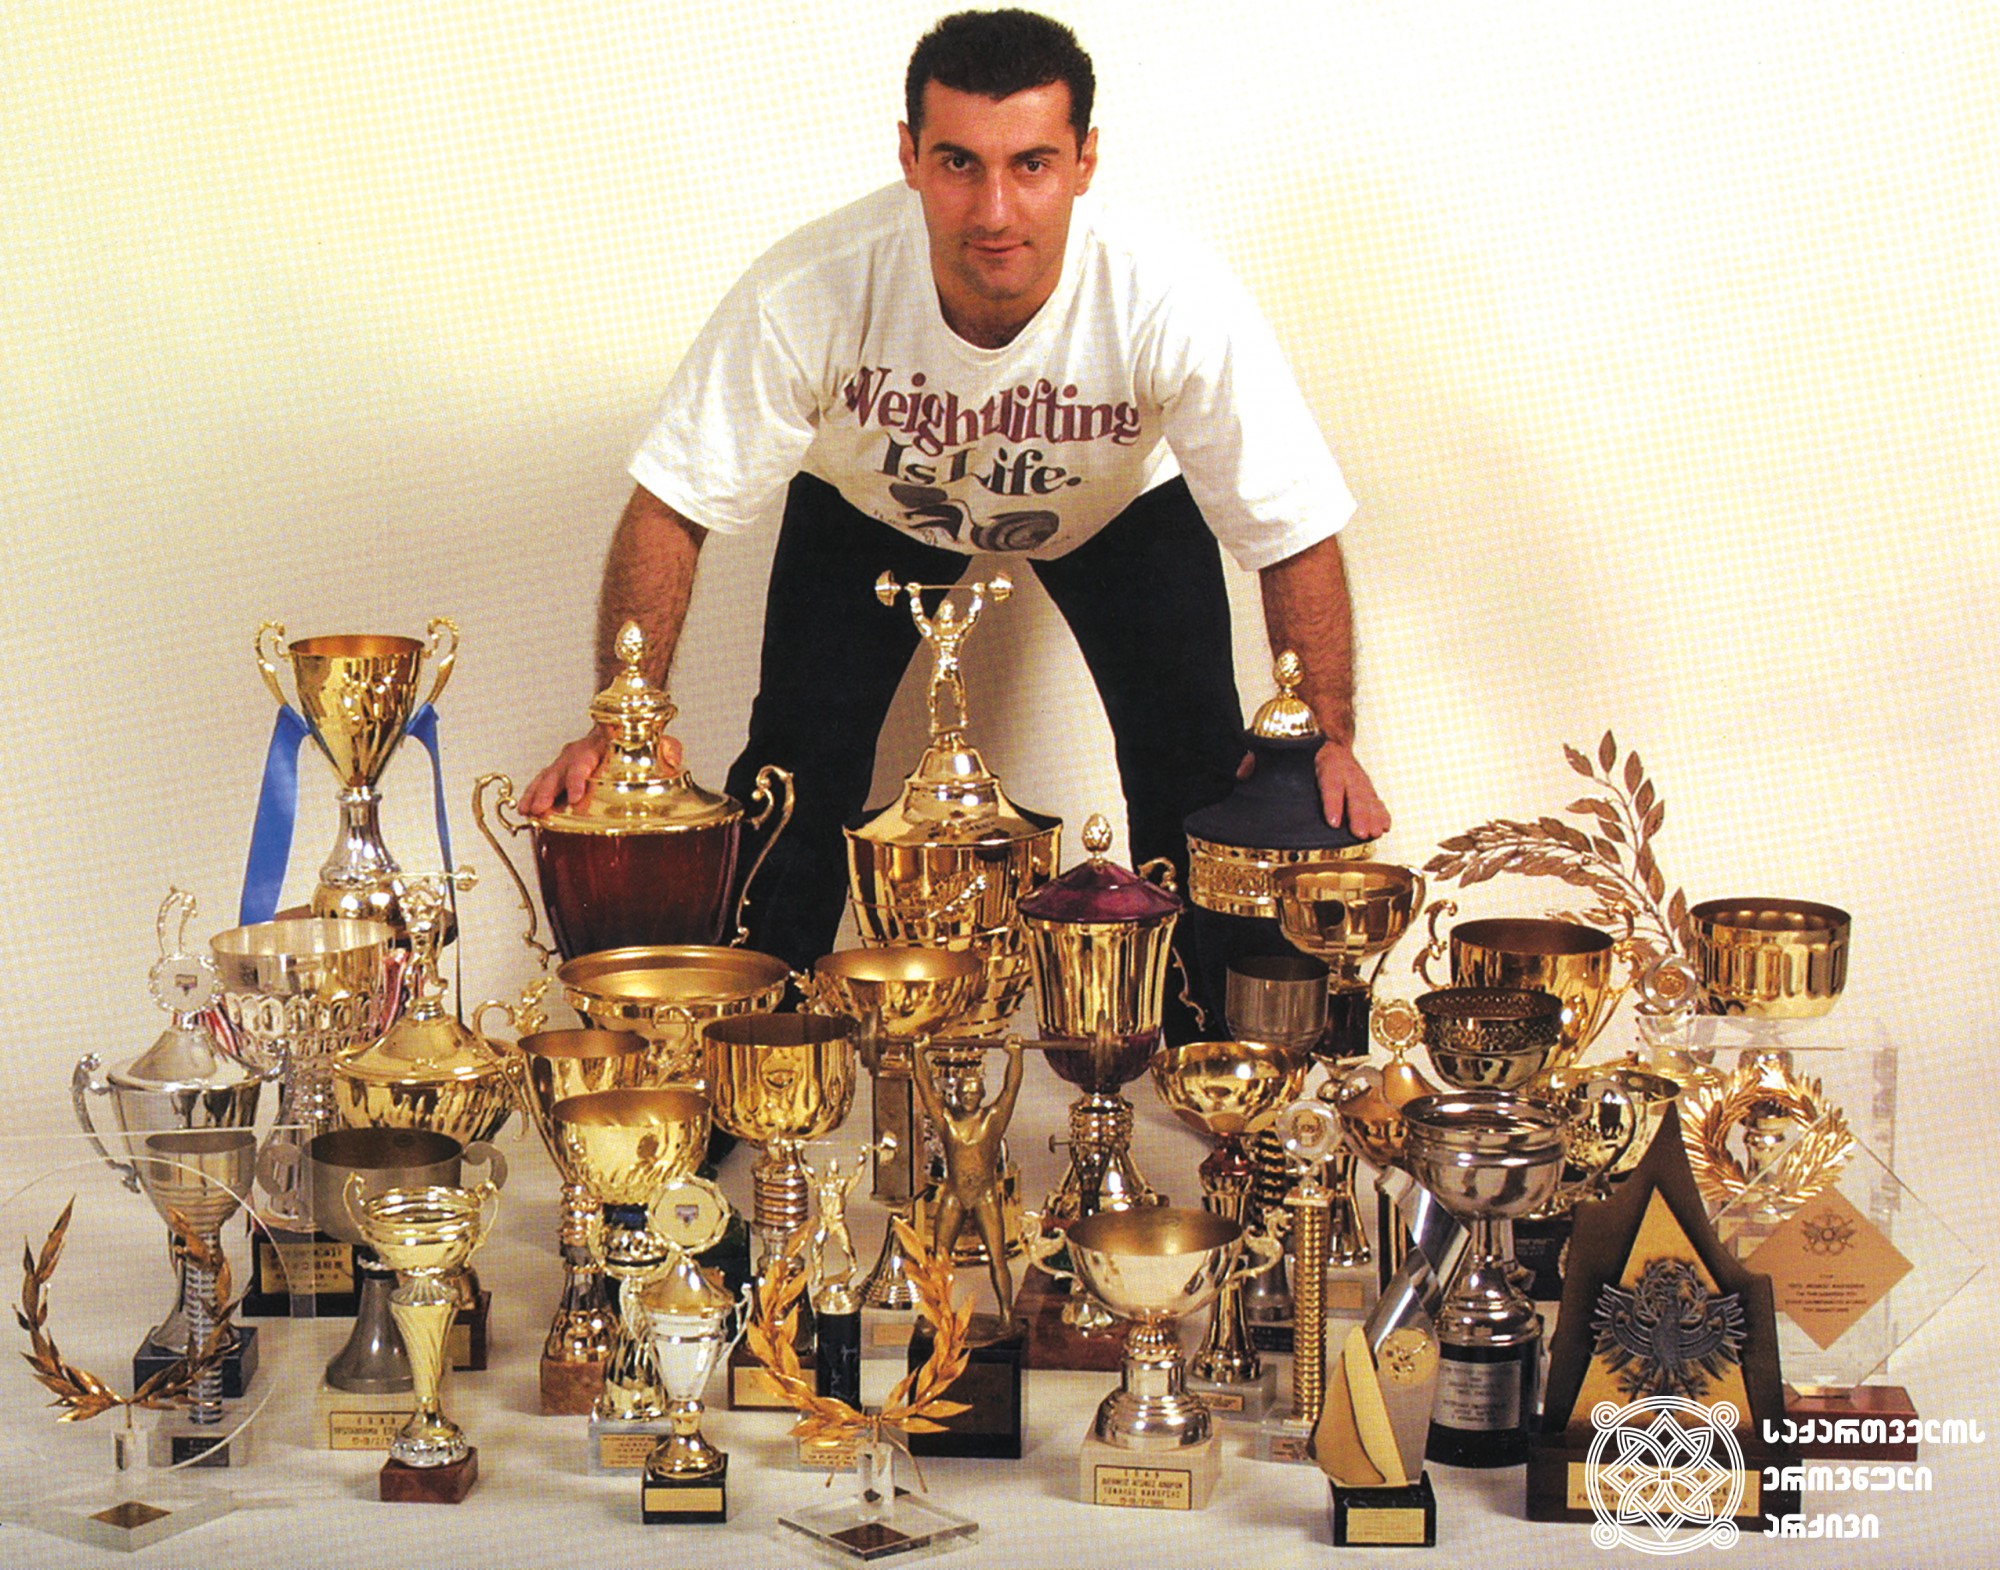 კახი კახიაშვილი. <br>
XXV, XXVI და XXVII ოლიმპიური თამაშების ჩემპიონი ძალოსნობაში (1992 წელი, ბარსელონა; 1996 წელი, ატლანტა; 2000 წელი, სიდნეი).  <br>

Kakhi Kakhishvili. <br>

Champion of the XXV, XXVI and XXVII Olympic Games in Weightlifting (1992, Barcelona; 1996, Atlanta; 2000, Sydney).